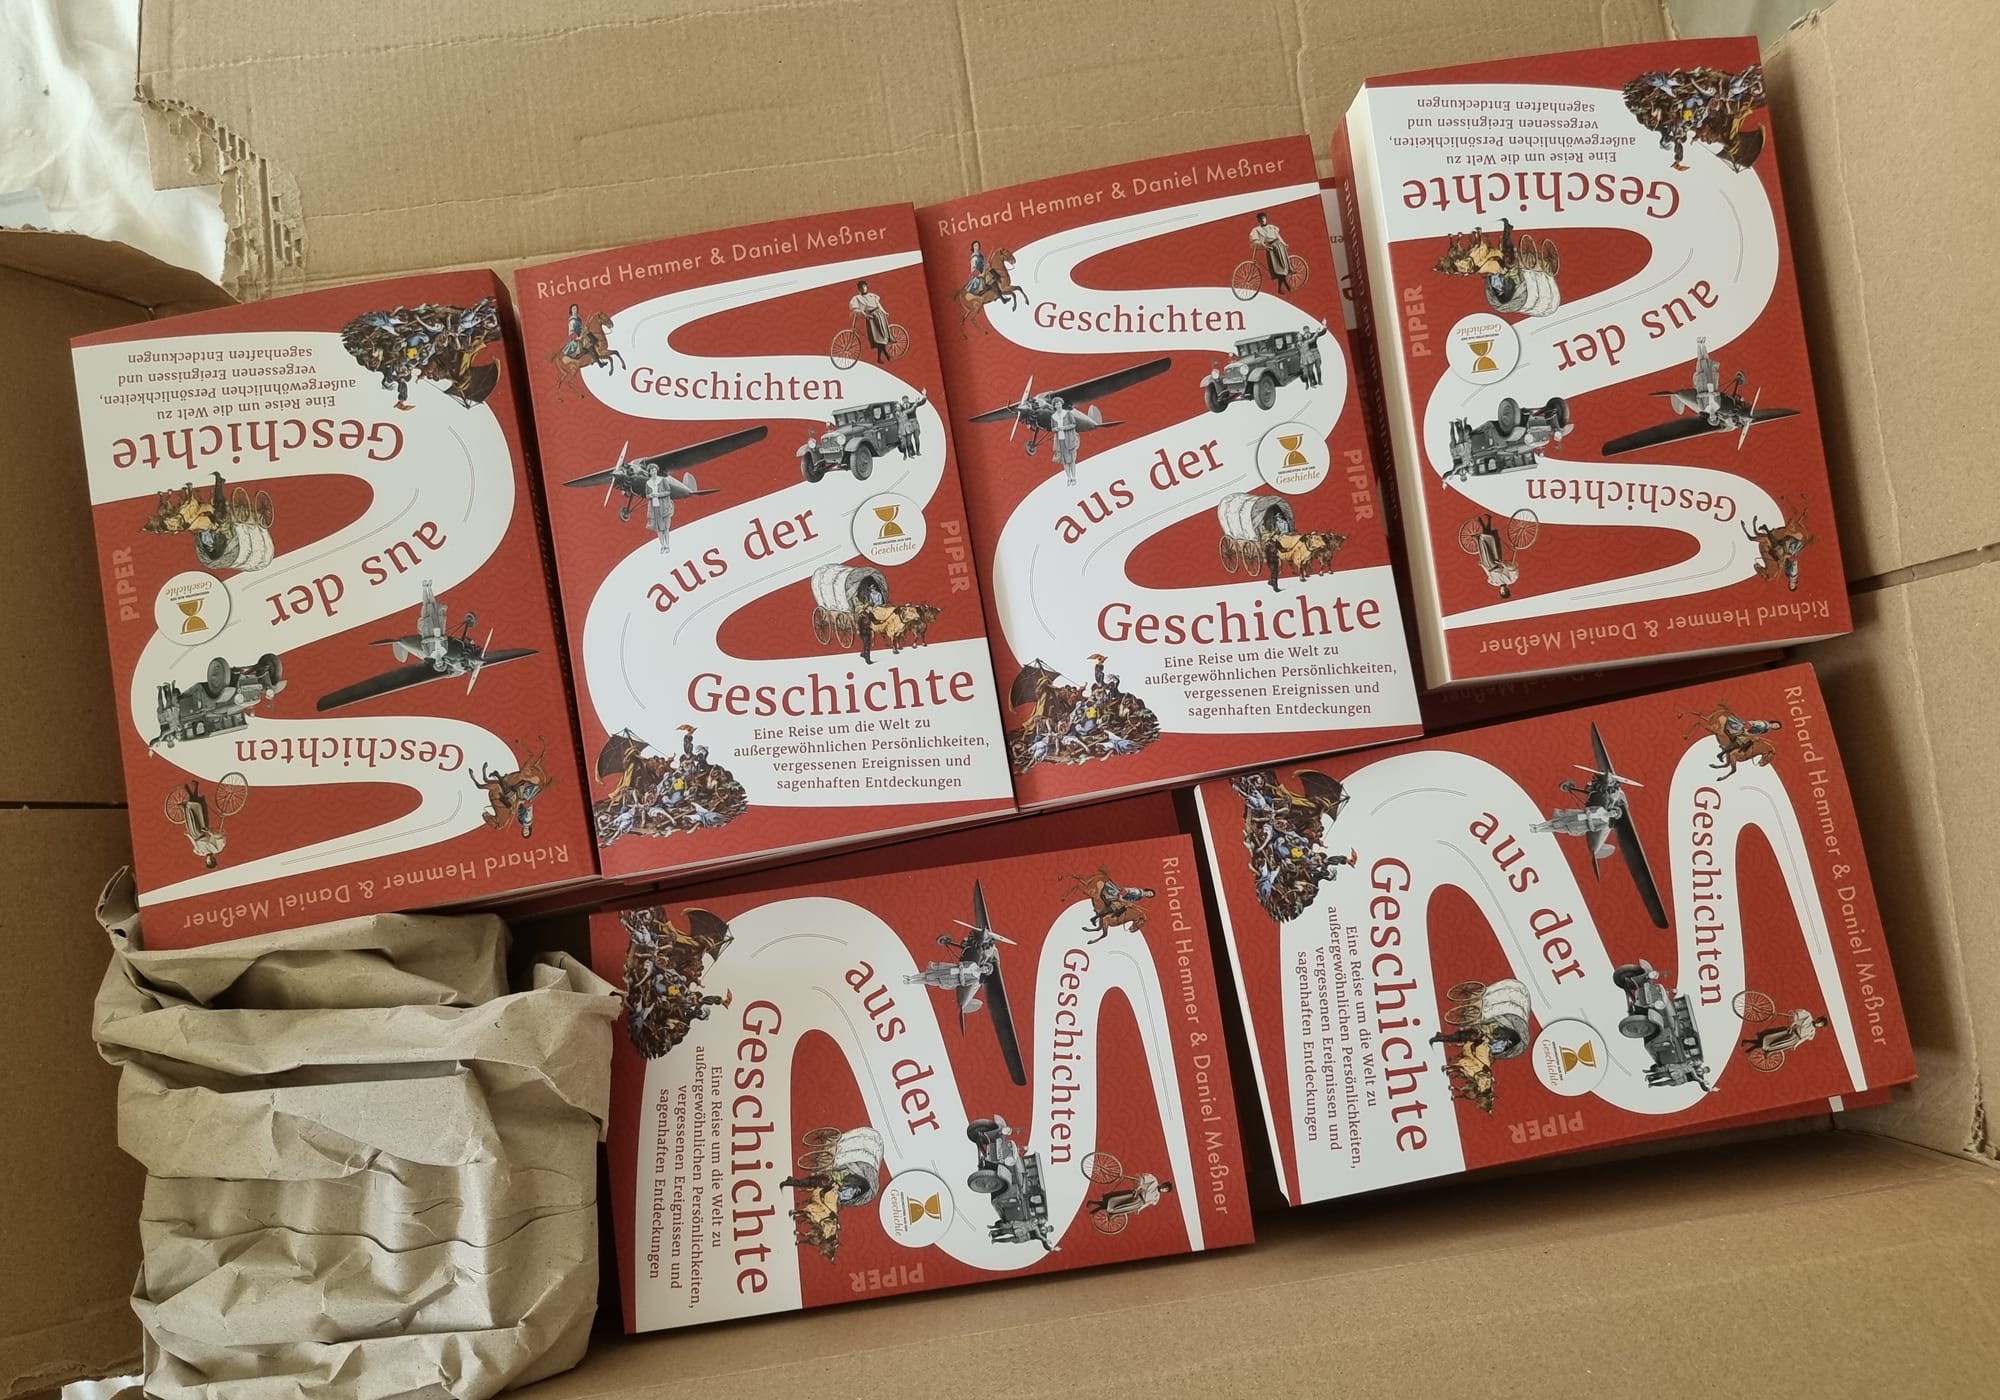 A box of books titled "Geschichten aus der Geschichte"